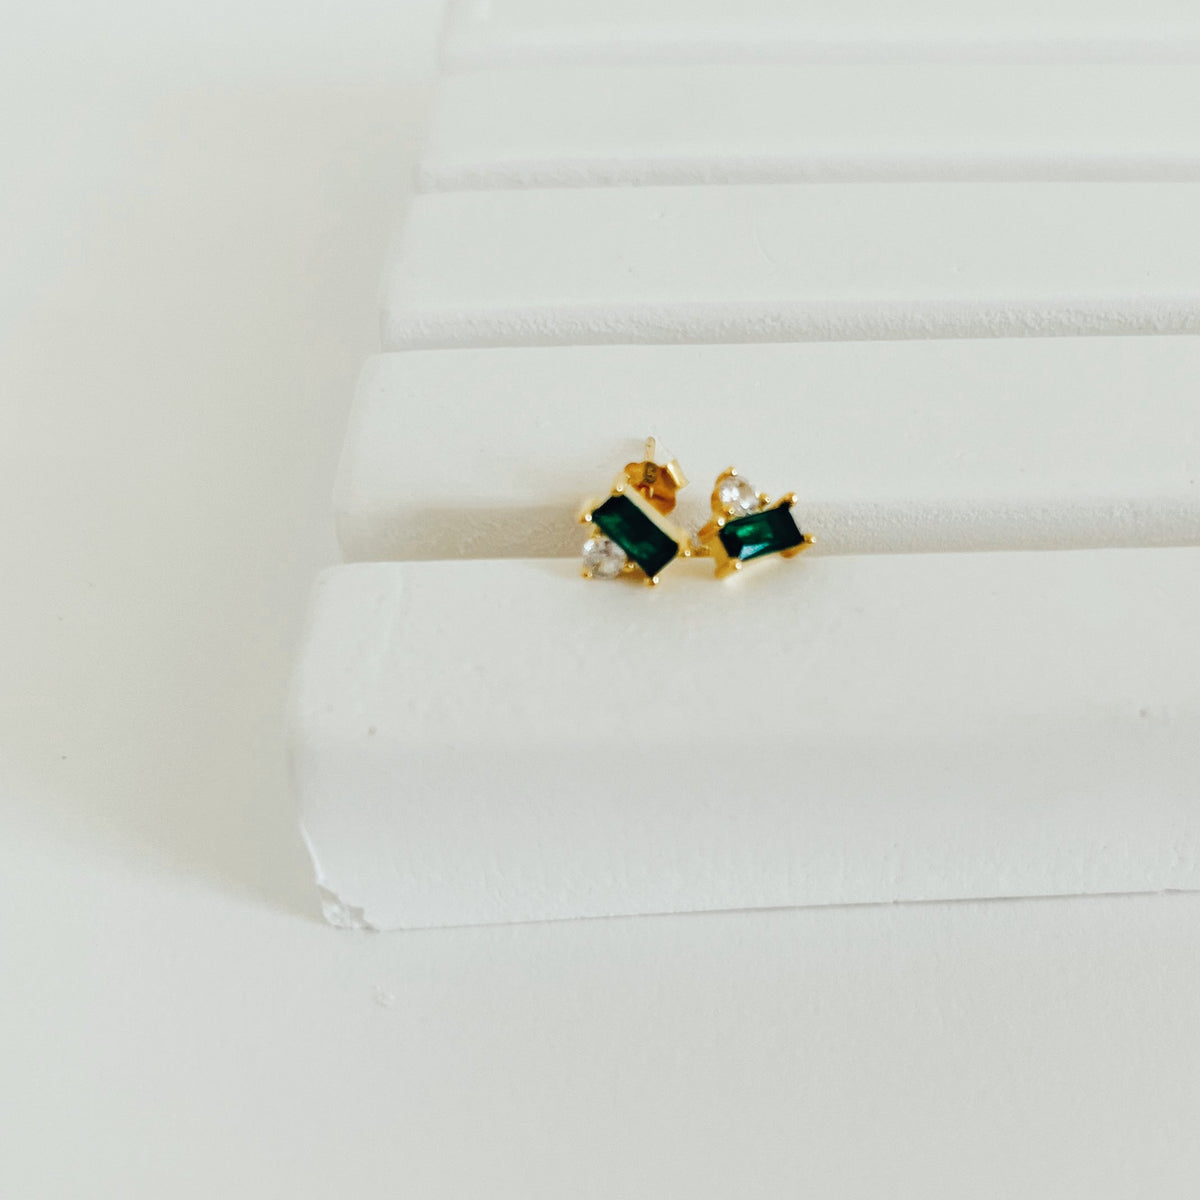 Emerald gold stud earrings.